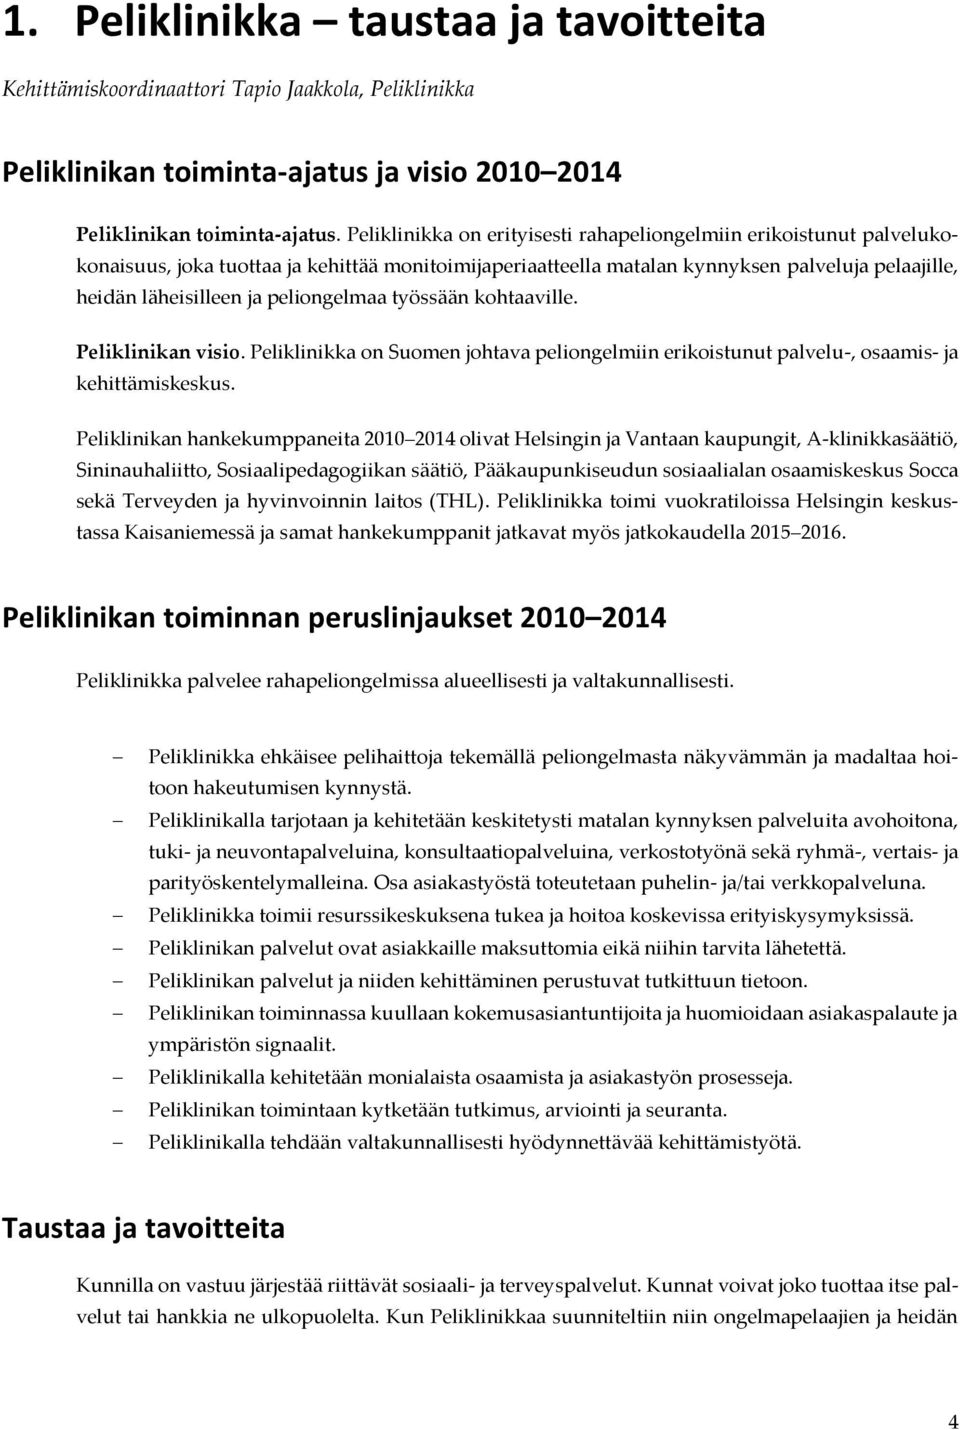 peliongelmaa työssään kohtaaville. Peliklinikan visio. Peliklinikka on Suomen johtava peliongelmiin erikoistunut palvelu-, osaamis- ja kehittämiskeskus.